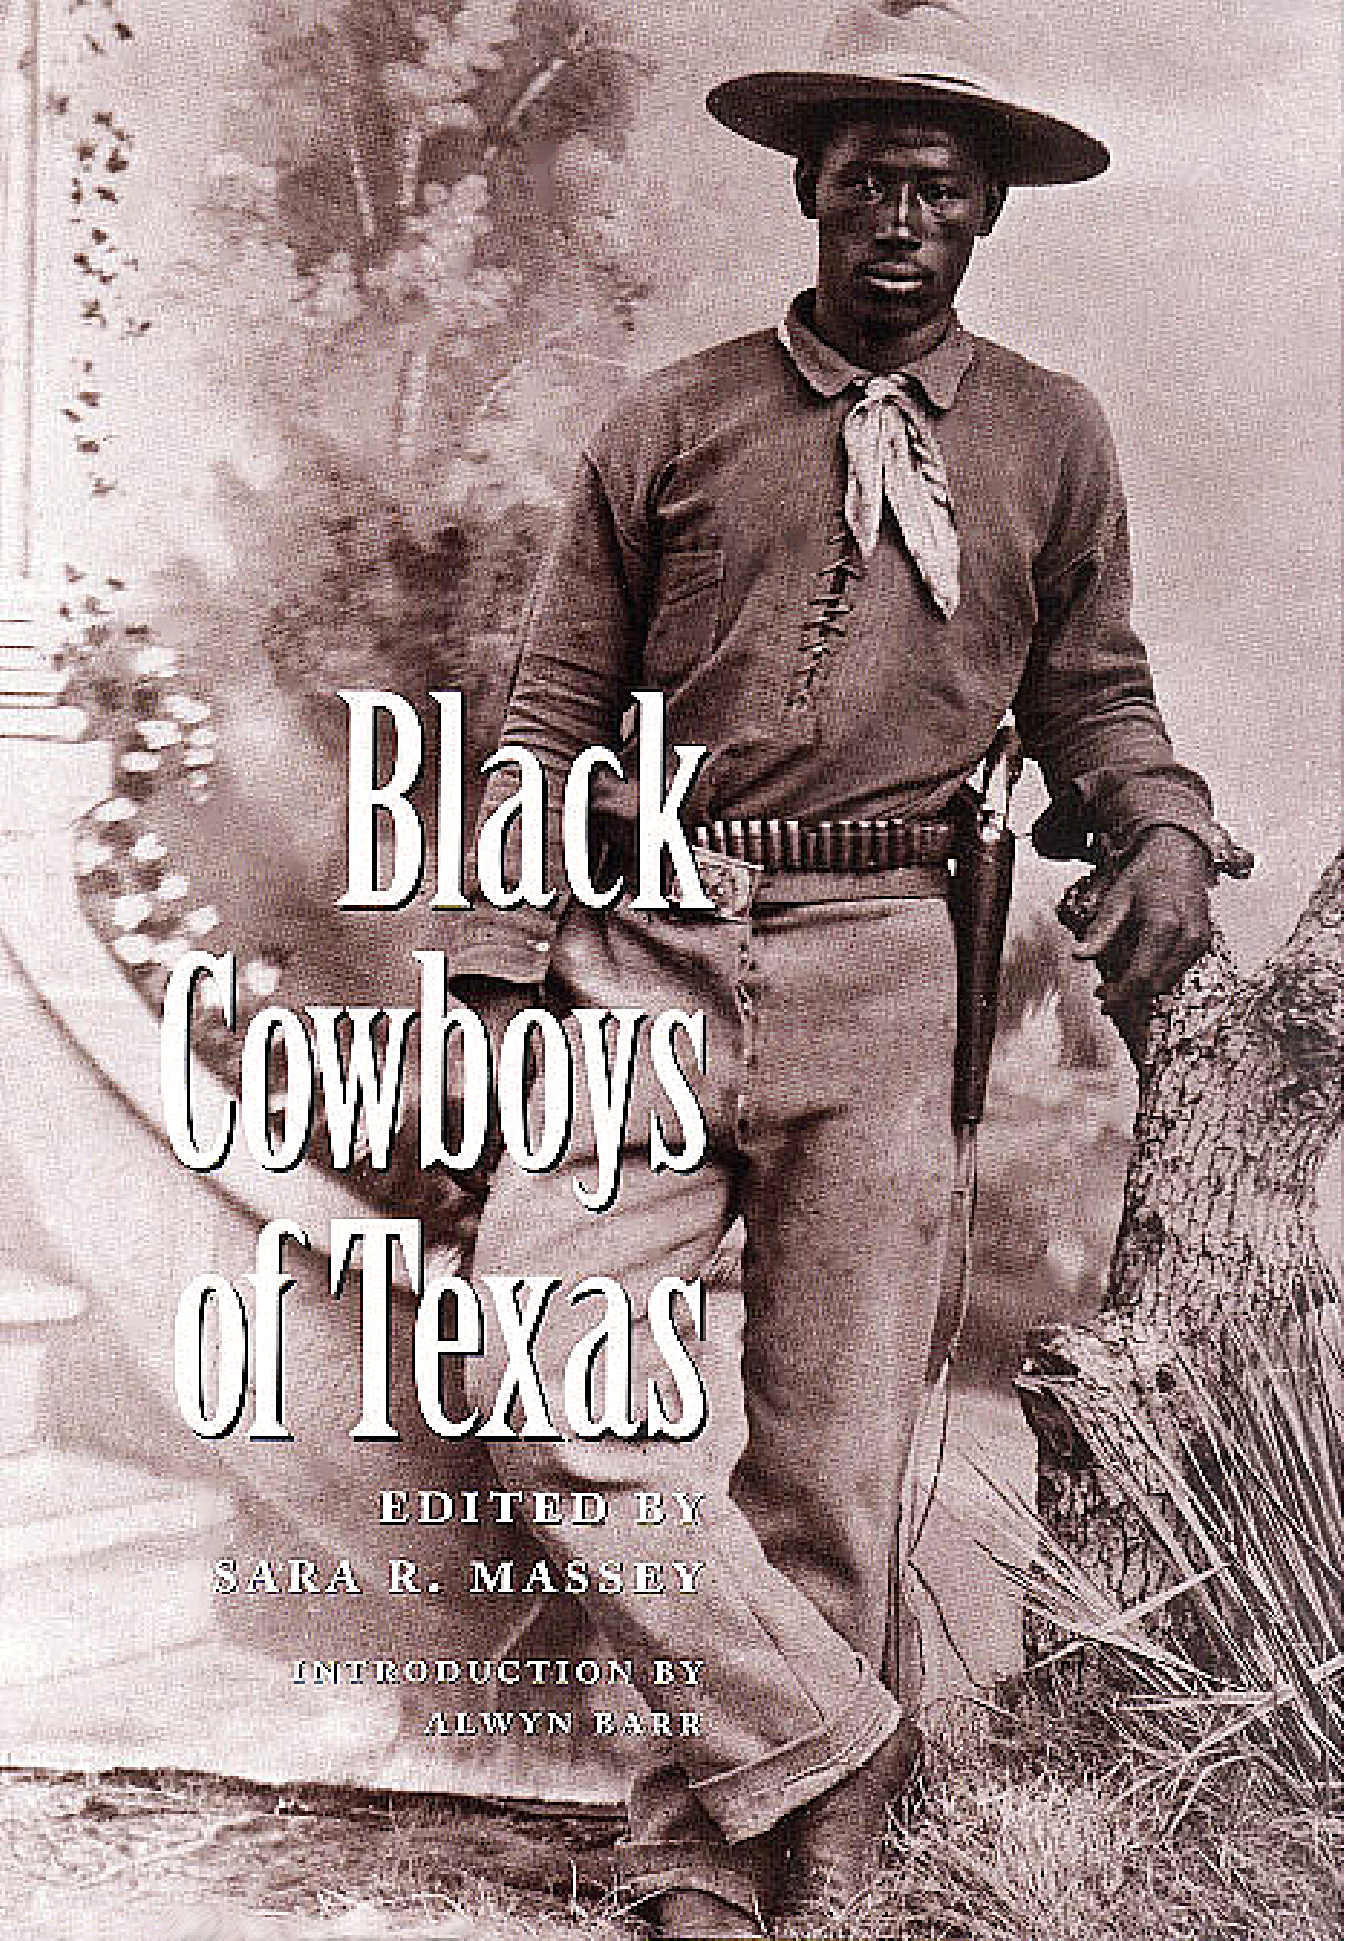 Black cowboys of Texas